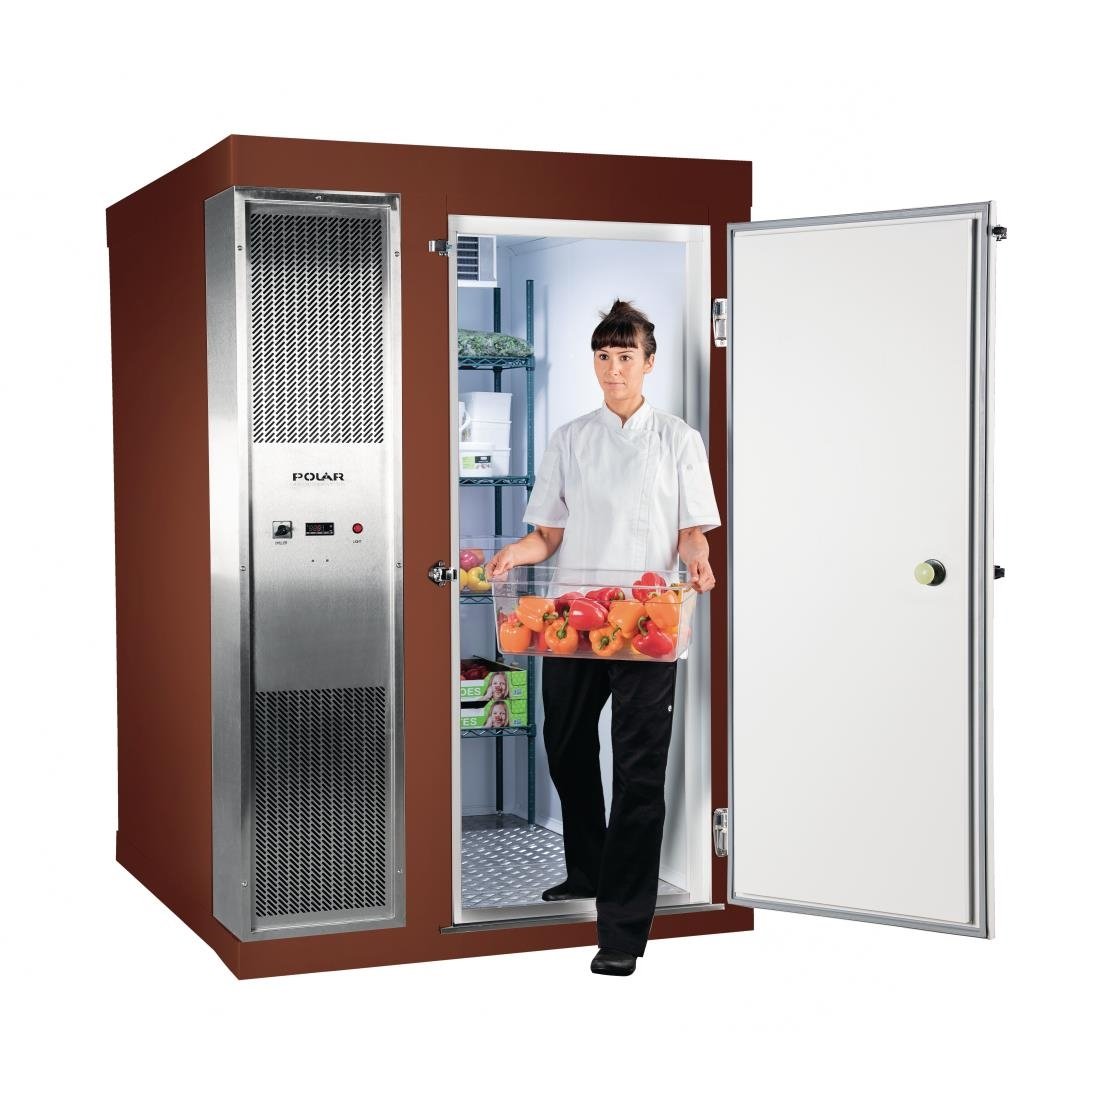 DS484-FBN Polar U-Series 1.8 x 1.5m Integral Walk In Freezer Room Brown JD Catering Equipment Solutions Ltd